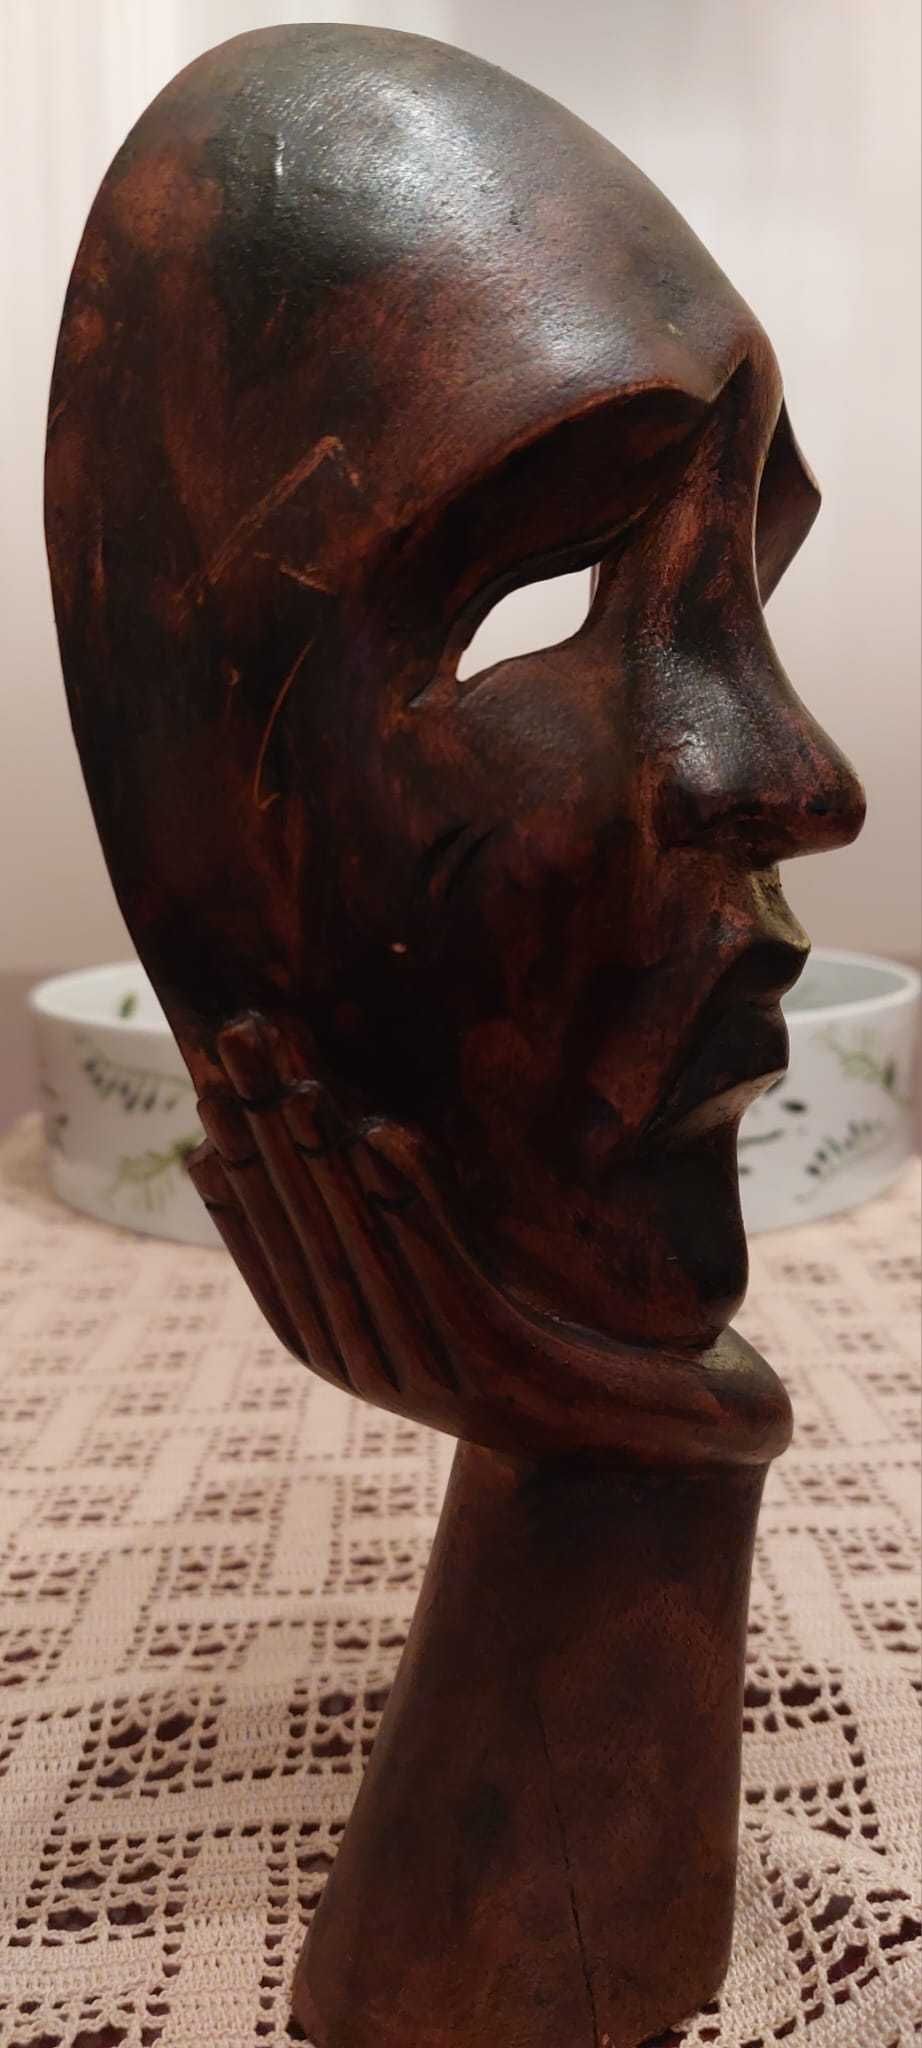 ARTESANATO: Máscara de Madeira [25cm]